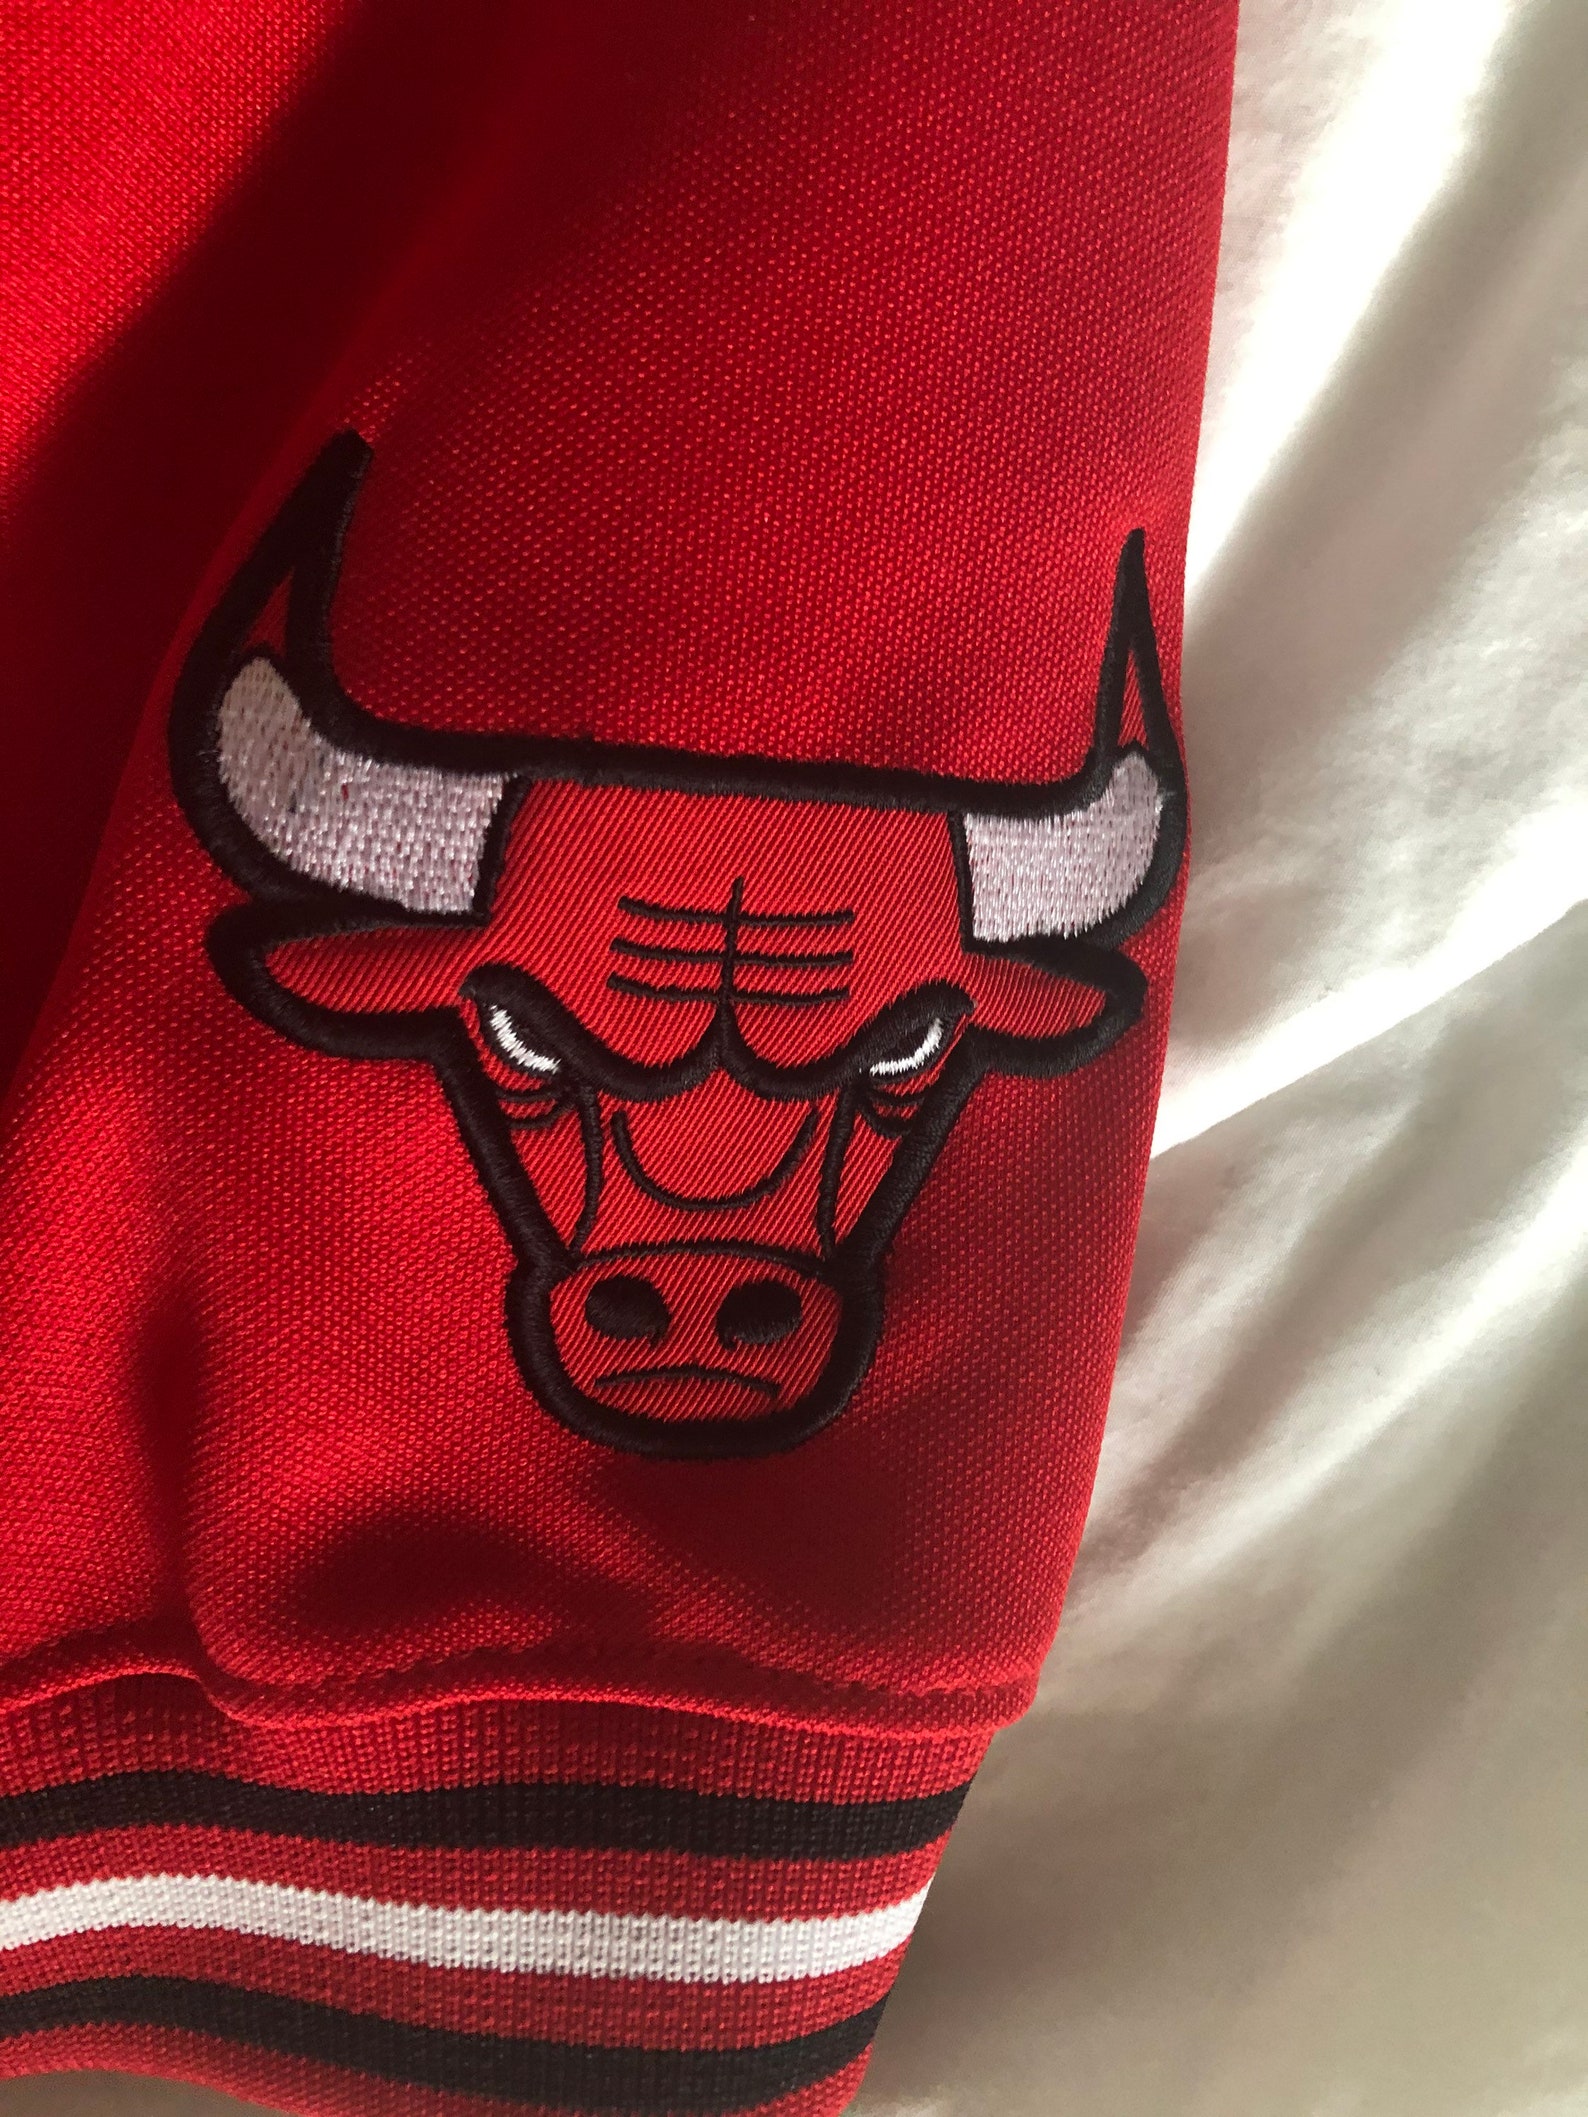 Retro Nike Chicago Bulls warmup jacket from 1984 season size | Etsy